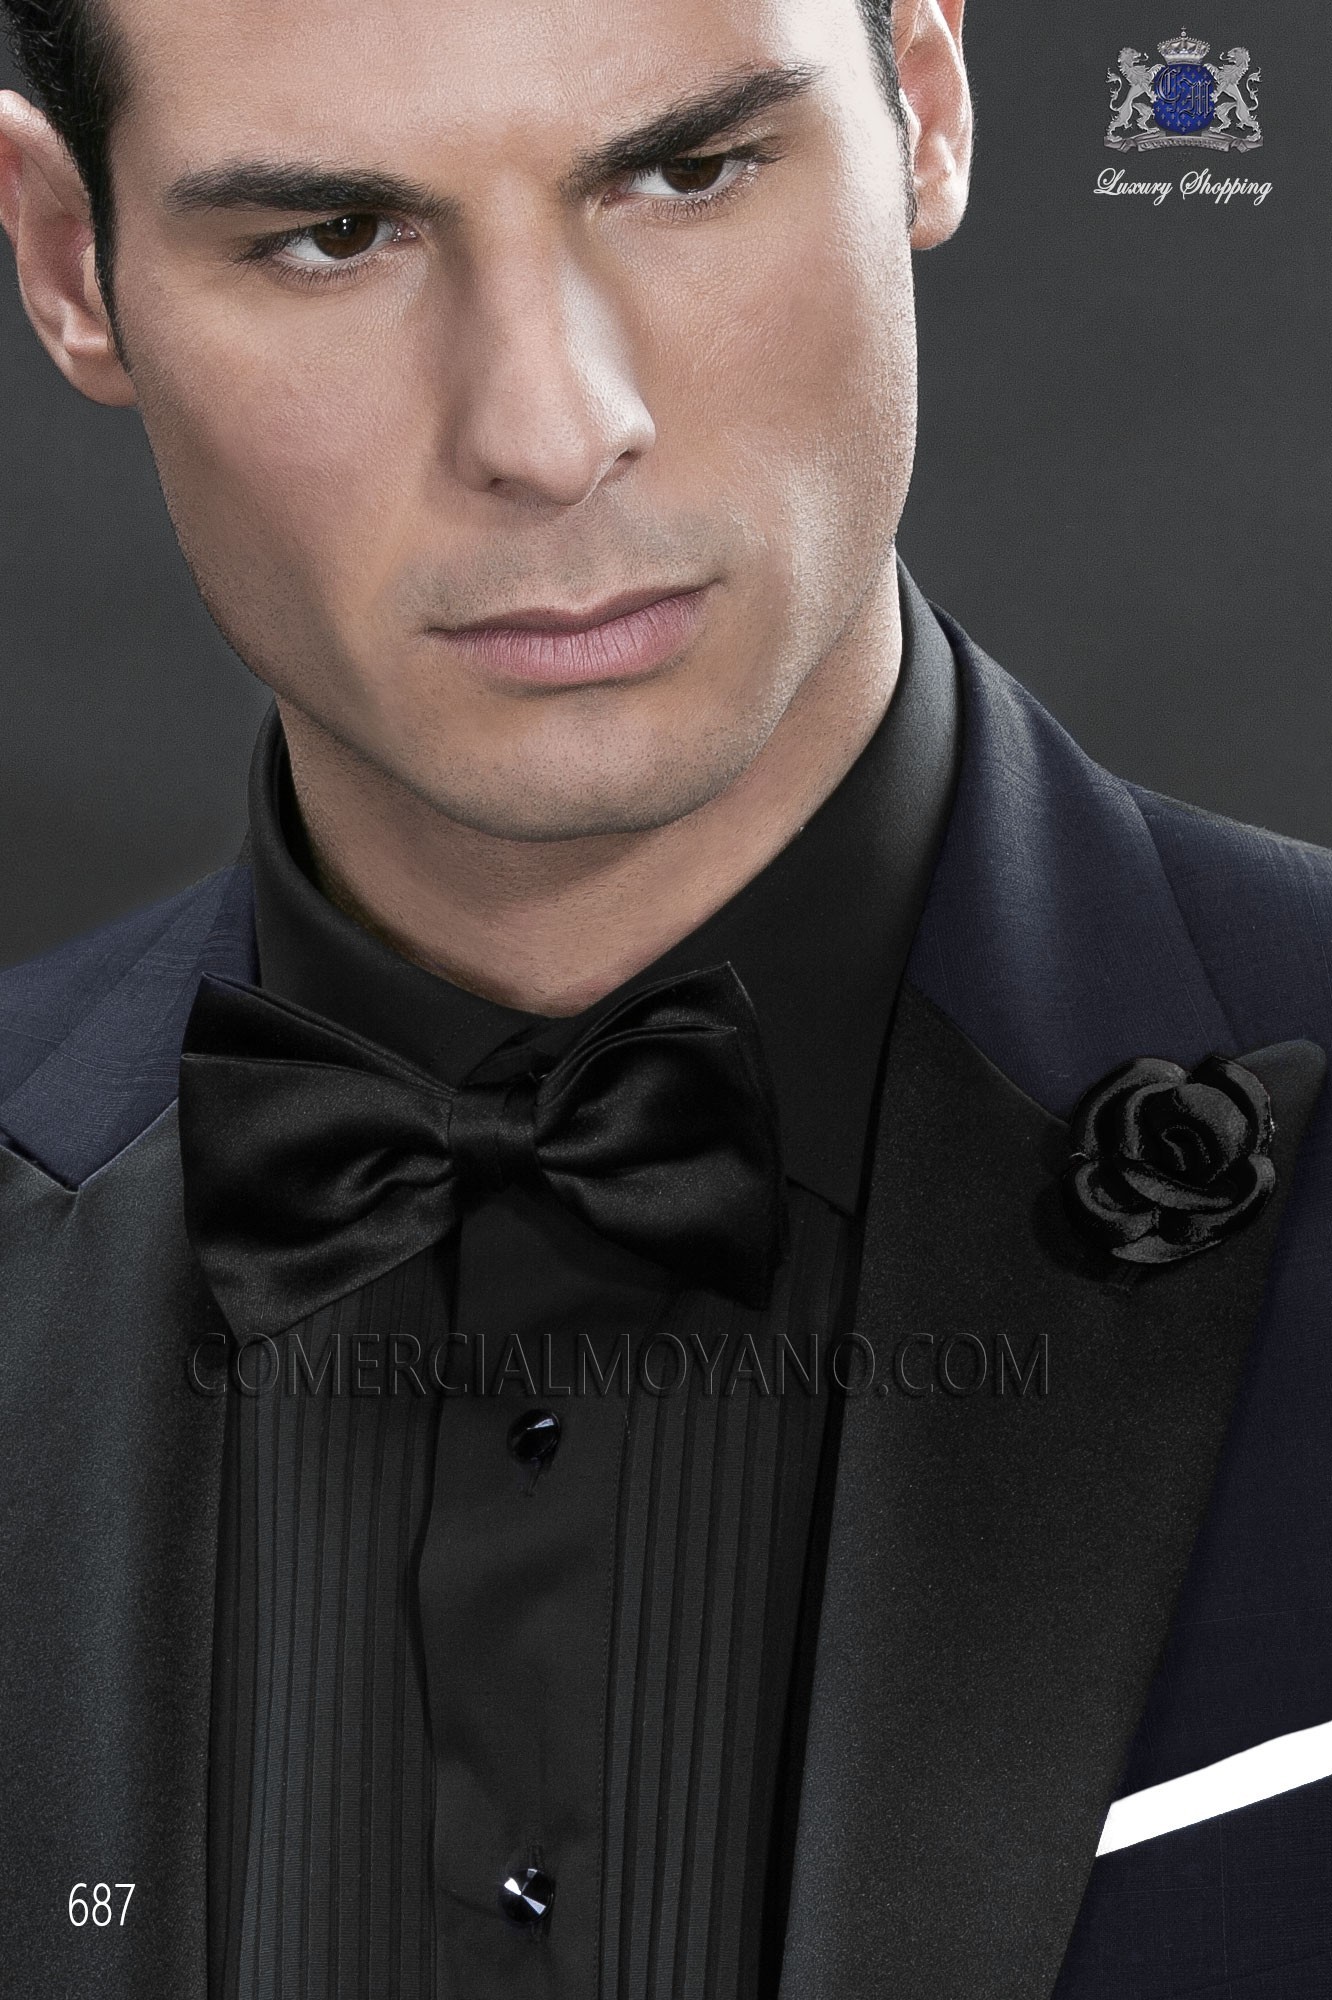 Traje BlackTie de novio negro modelo: 180 Mario Moyano colección Black Tie